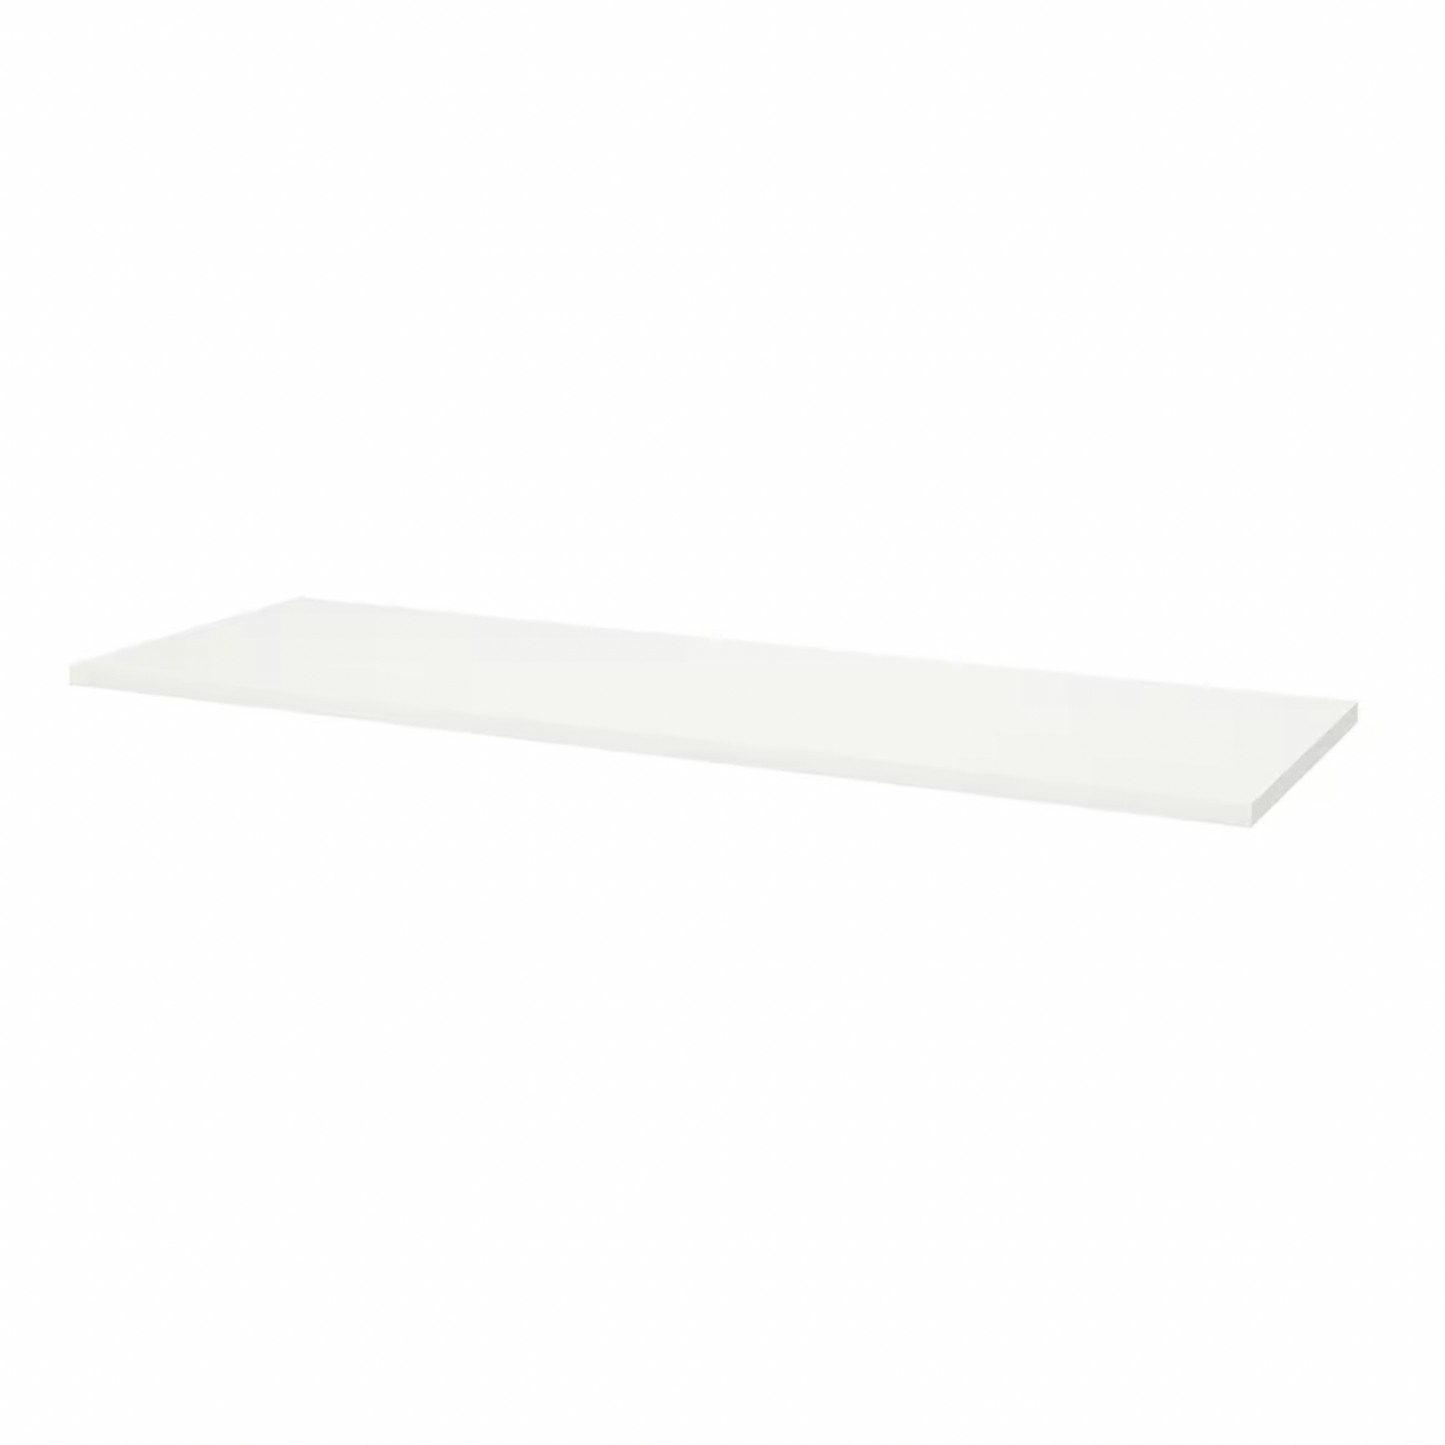 Ikea Lagkapten / Alex / Adils Desk Combo, 140x60x73cm, White (8130955313439)